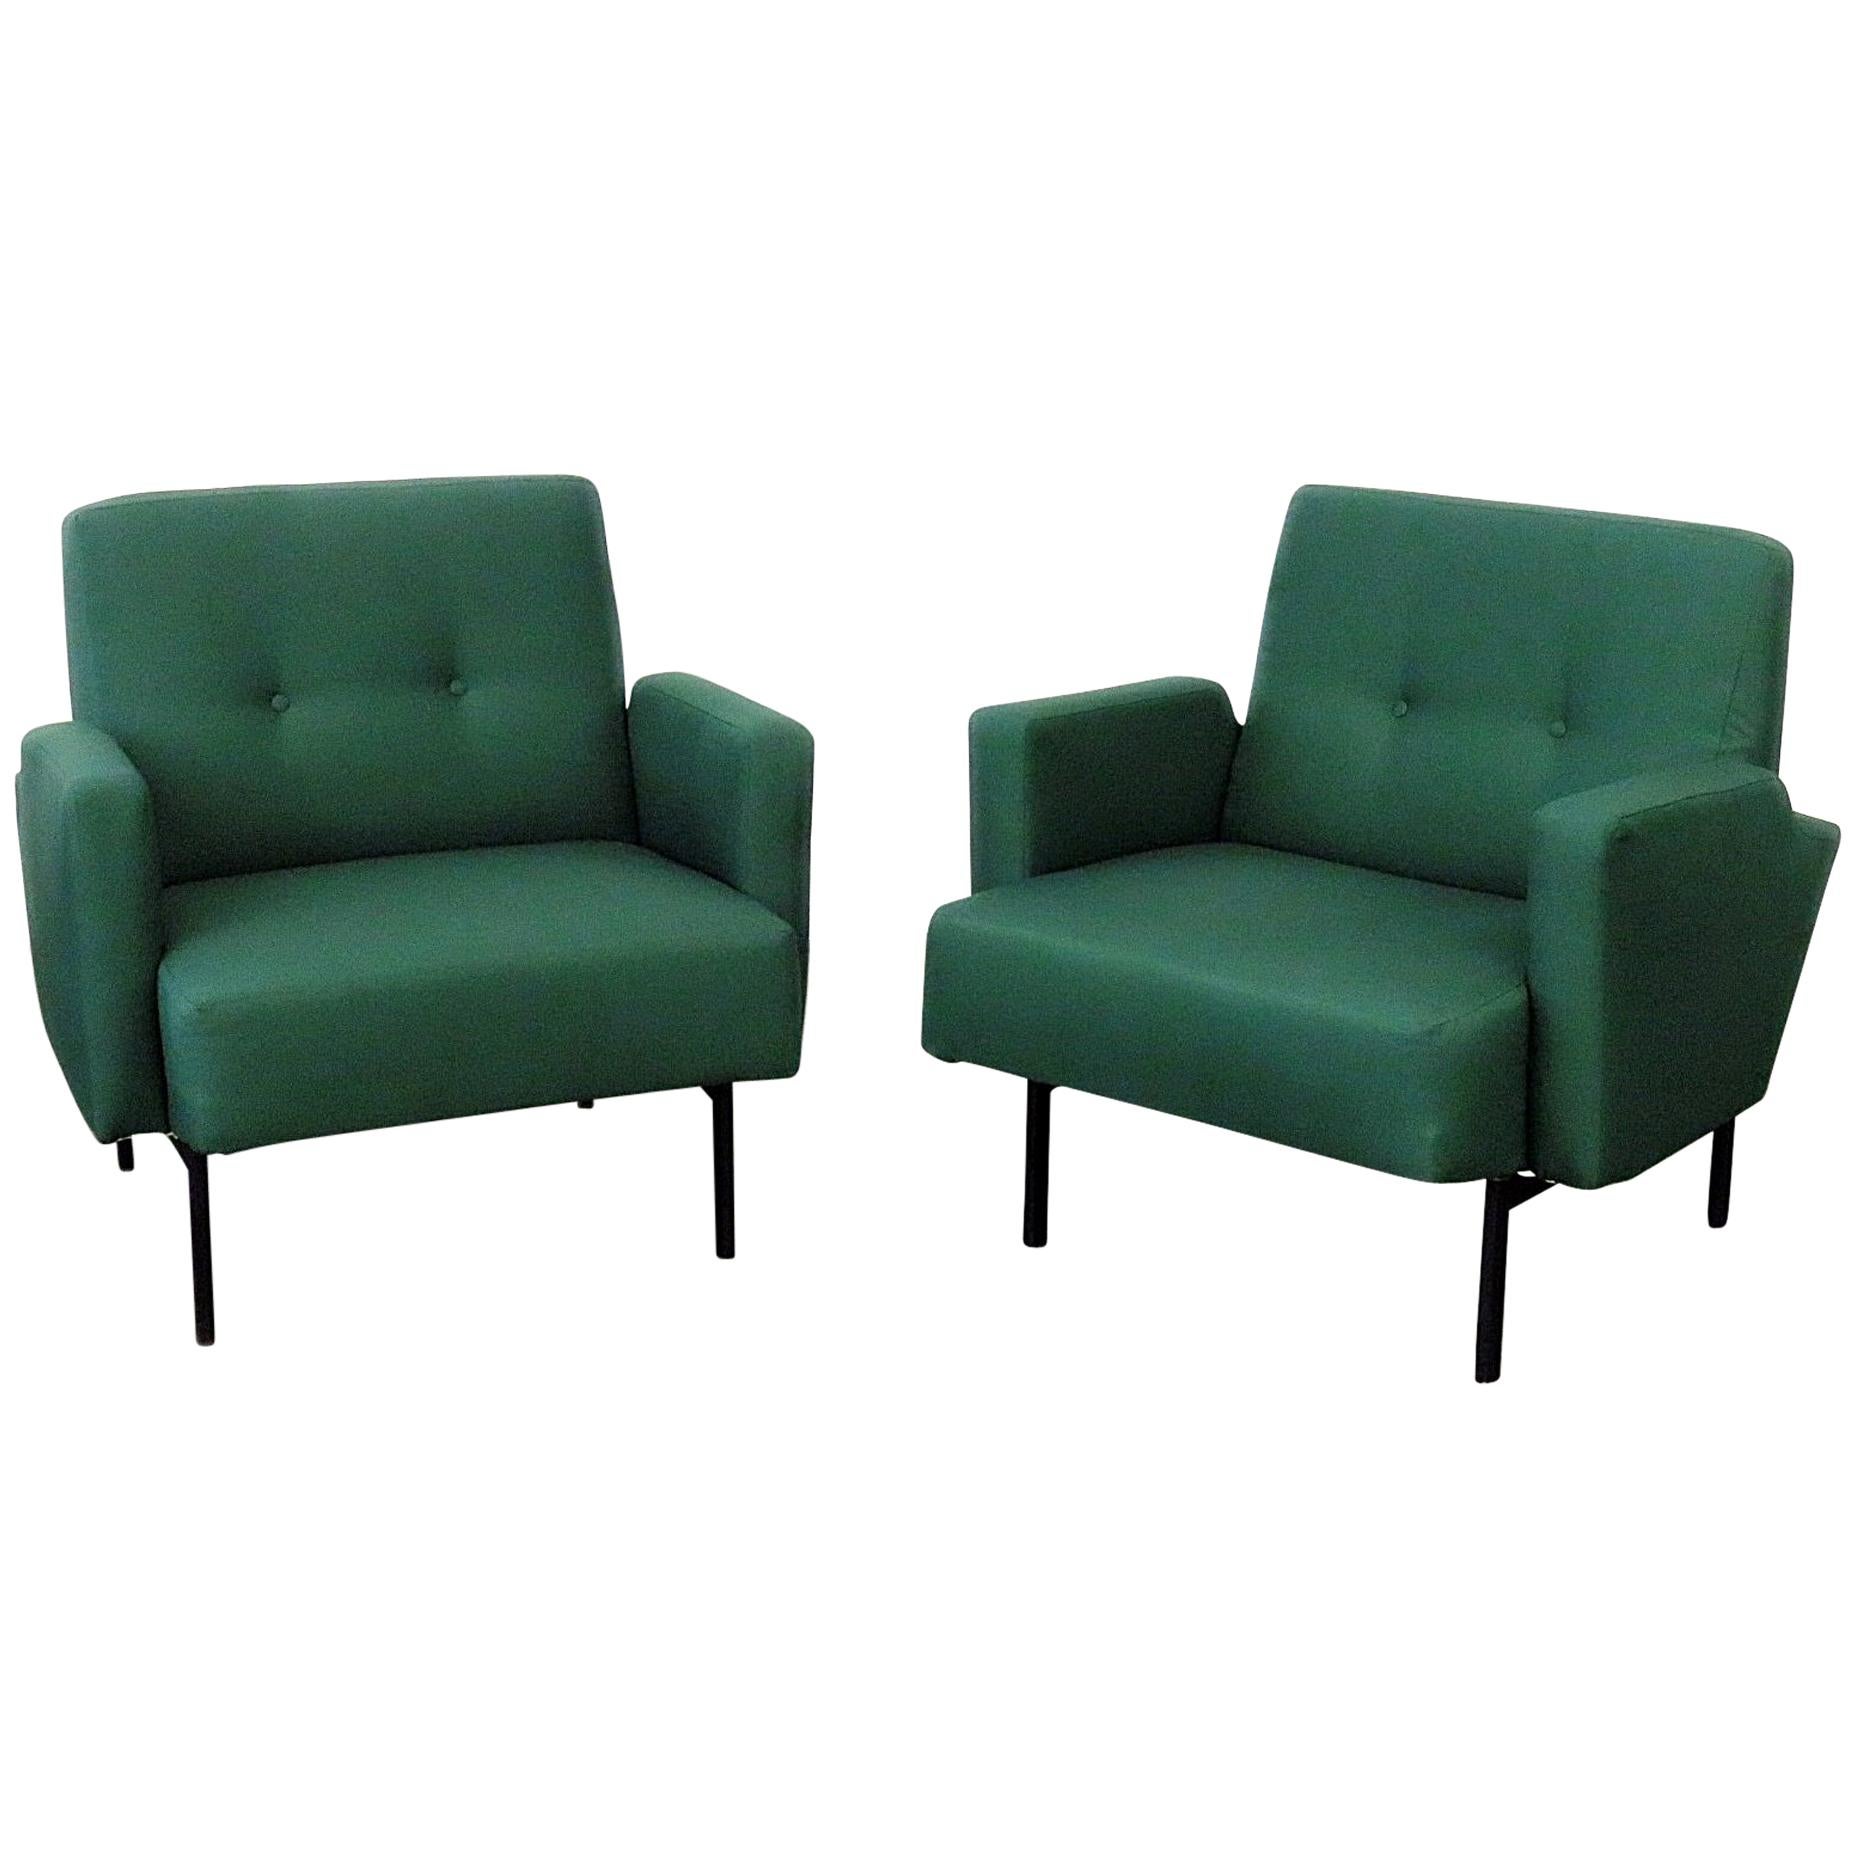 Pair of Italian Modern Club Chairs